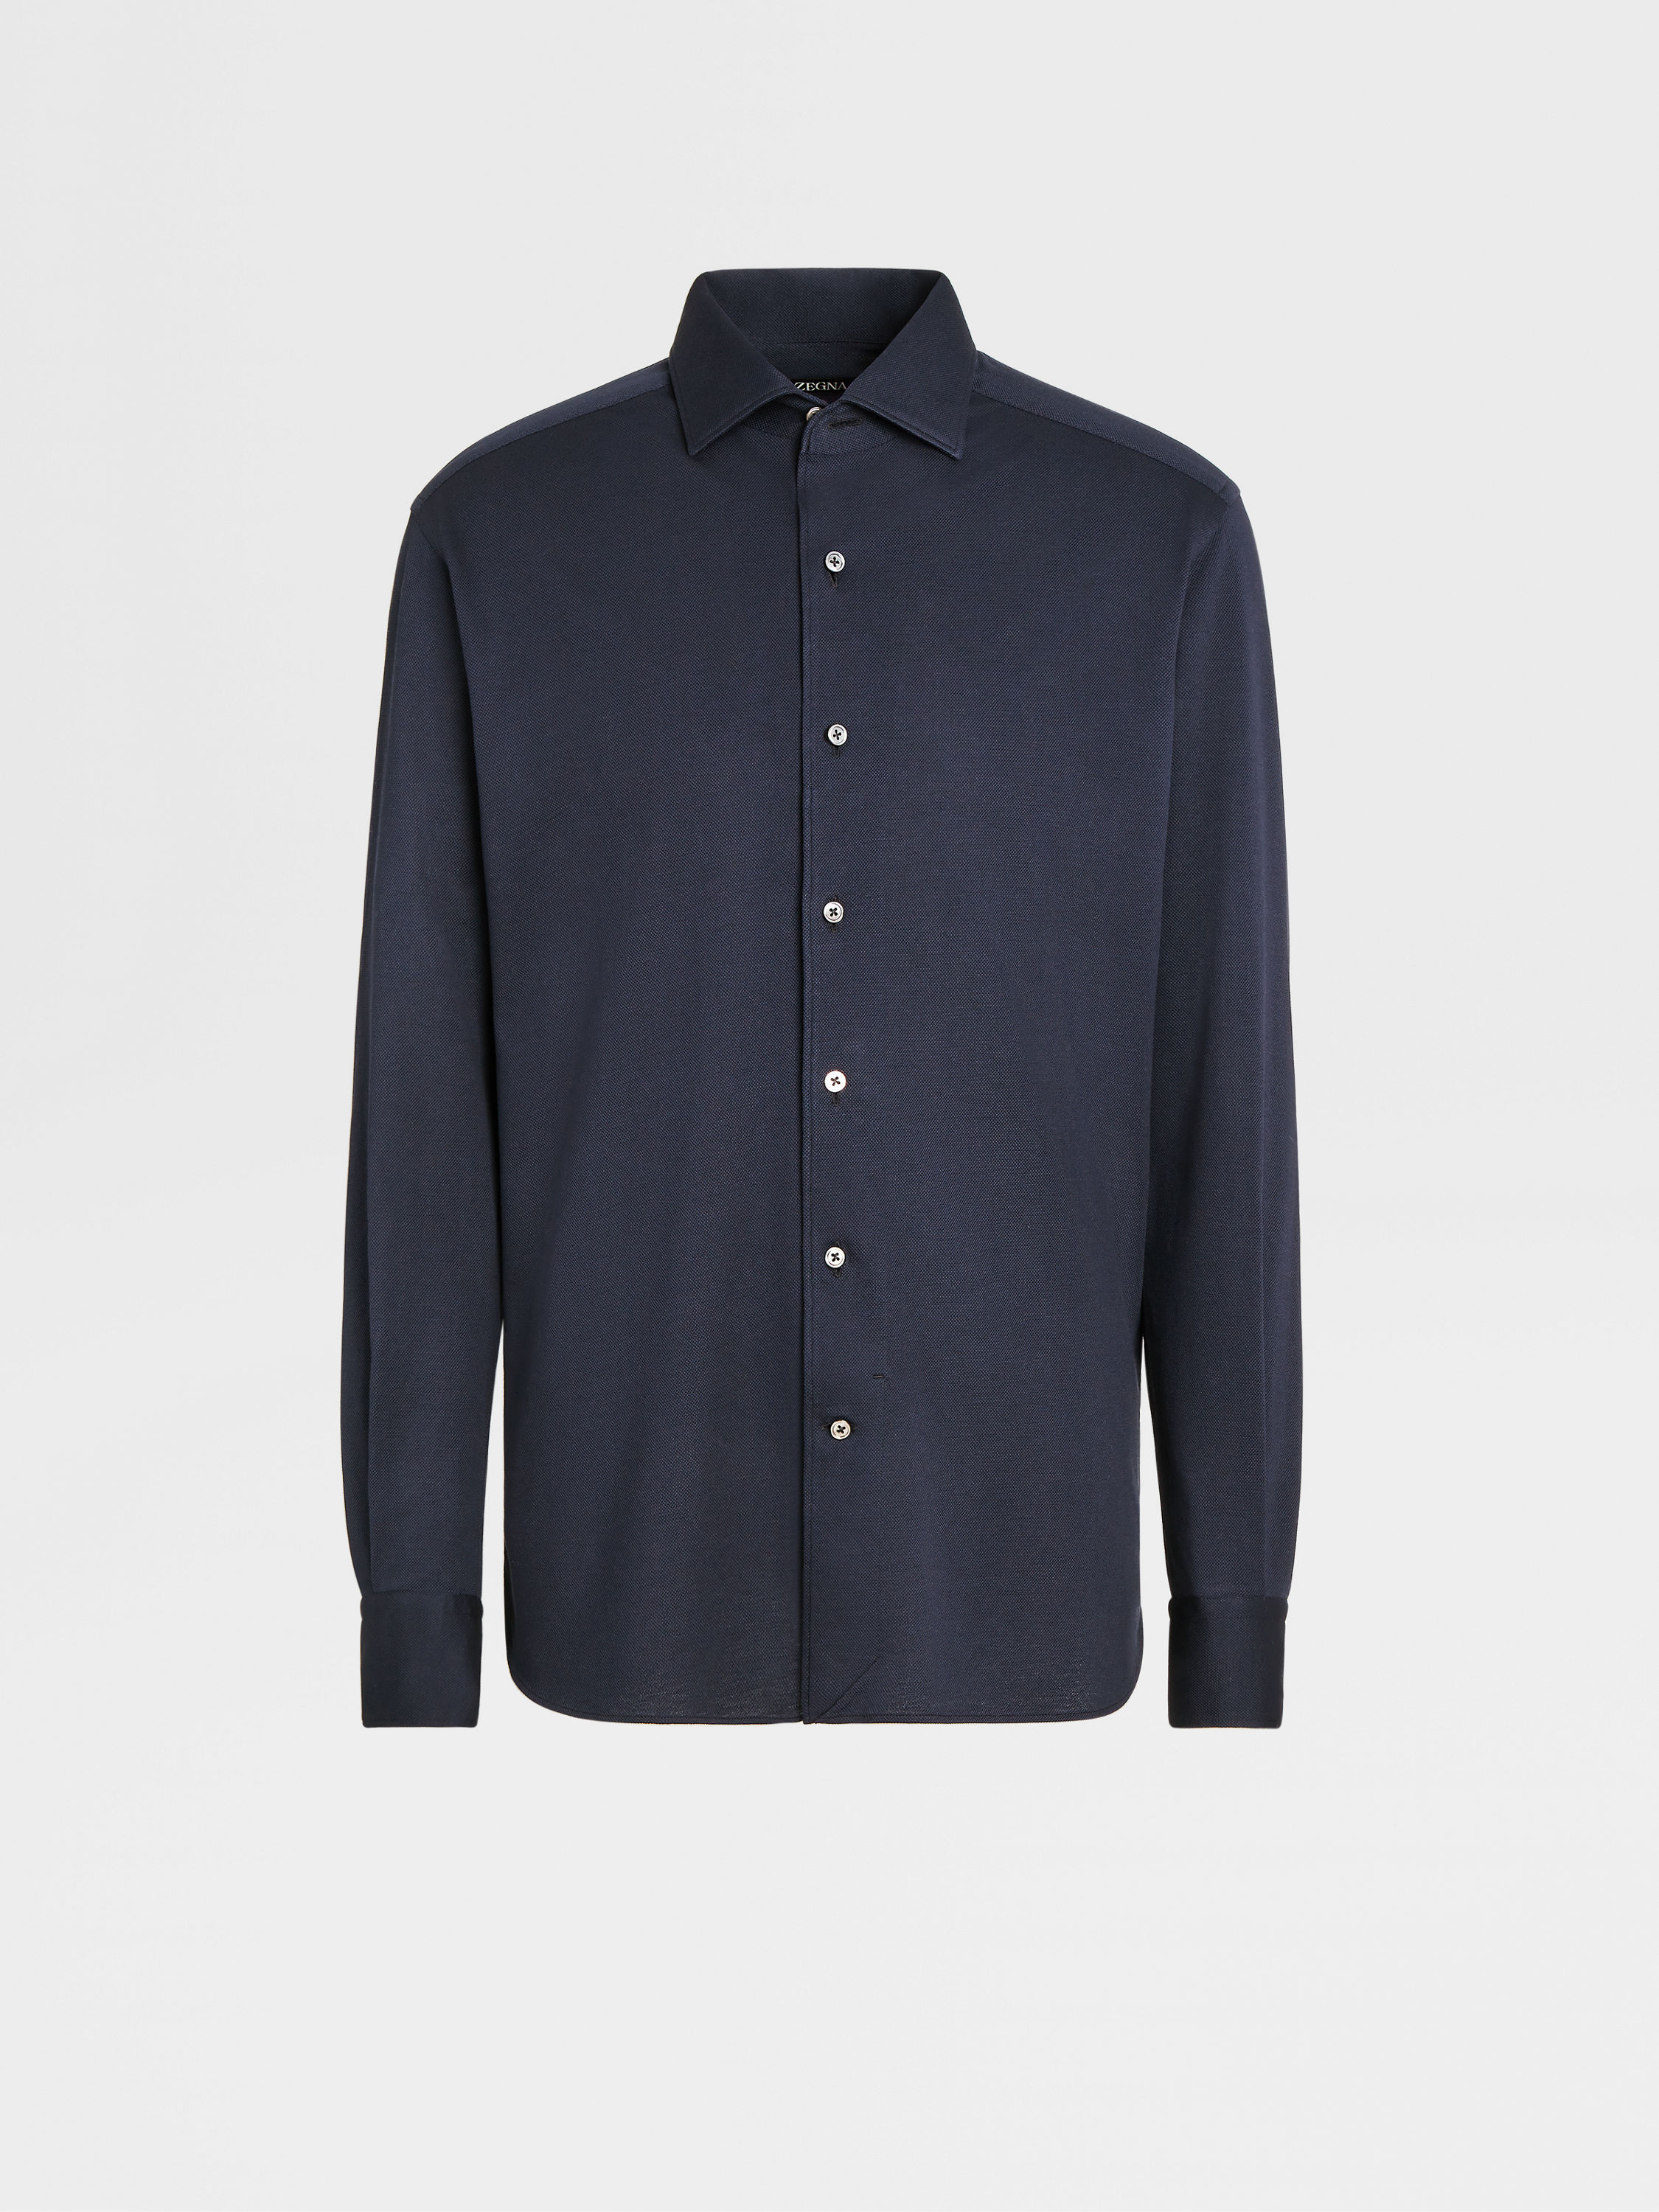 Navy Blue Jersey Cotton Long-sleeve Shirt FW23 22126248 | Zegna CH